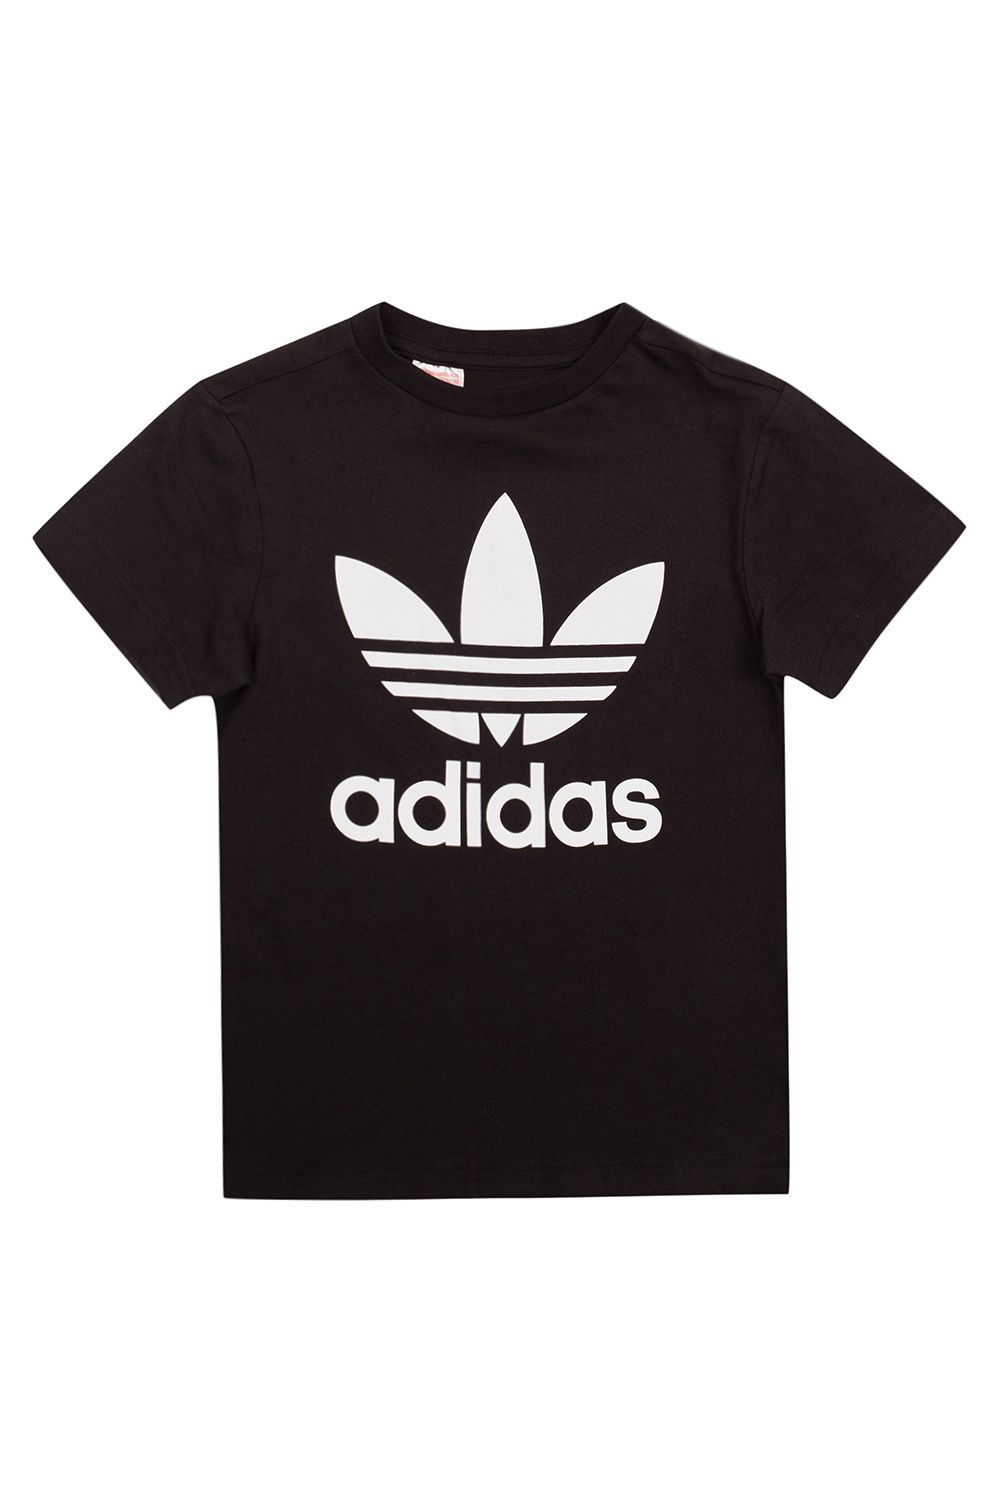 adidas date Kids Logo T-shirt